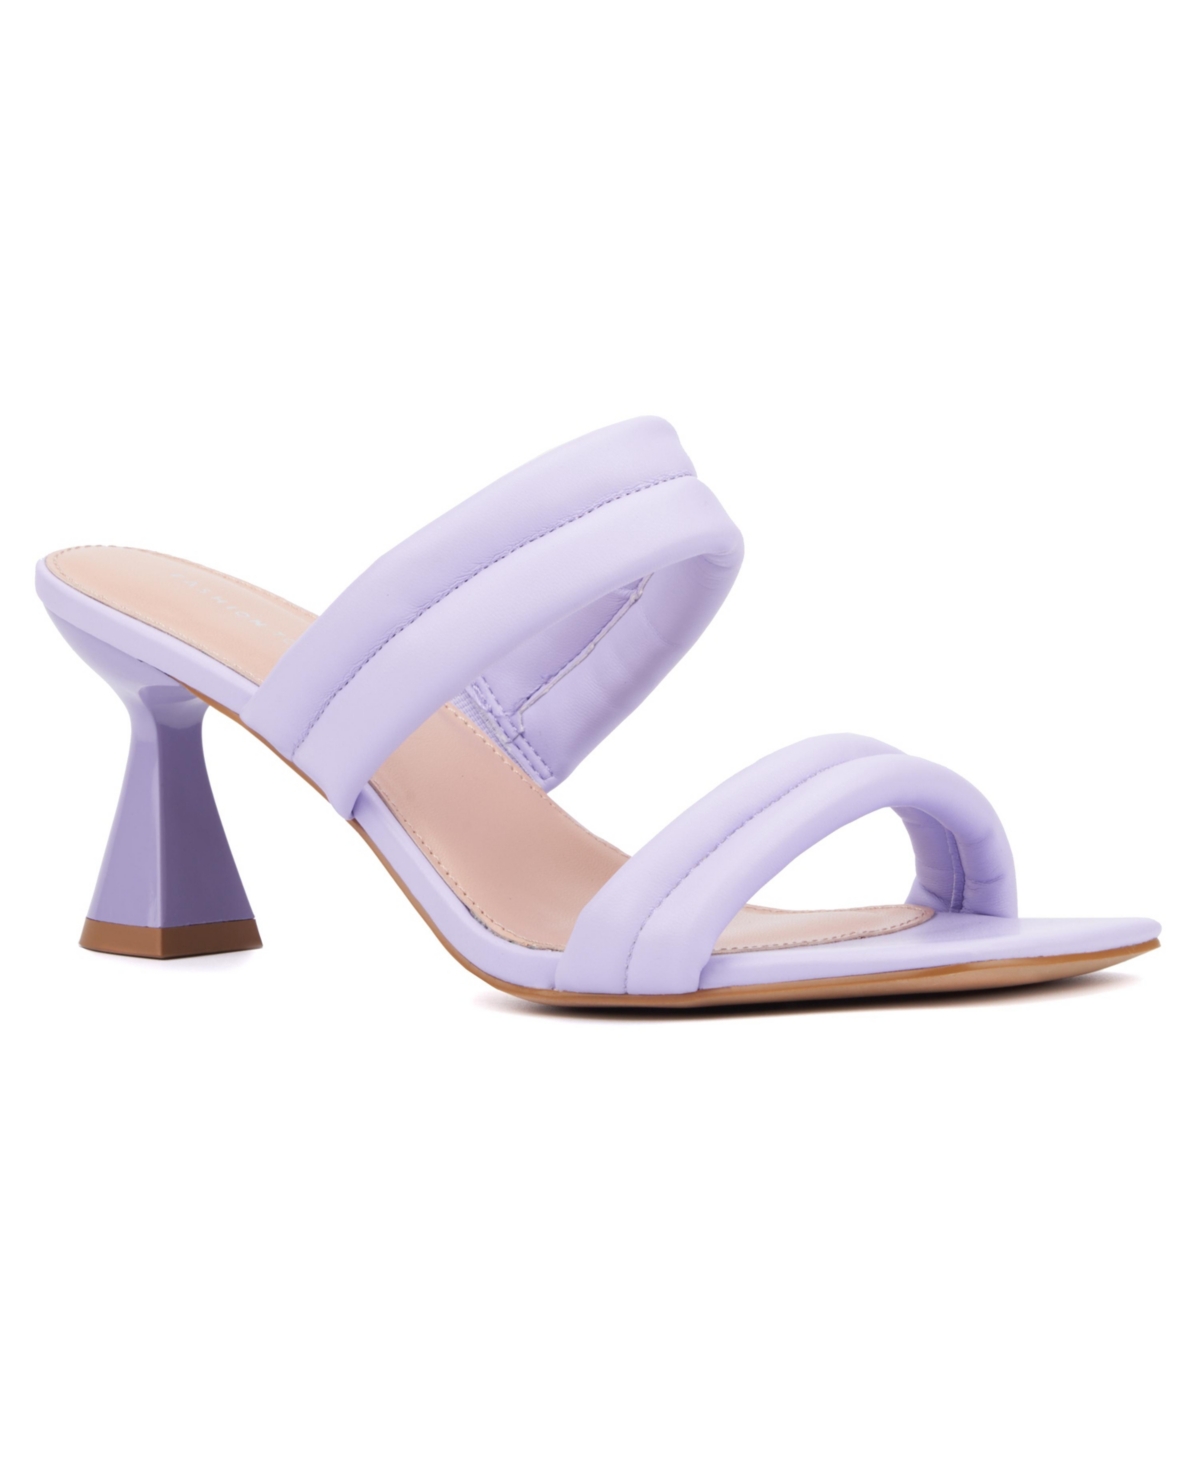 Women's Sophia Wide Width Heels Sandals - Lavender